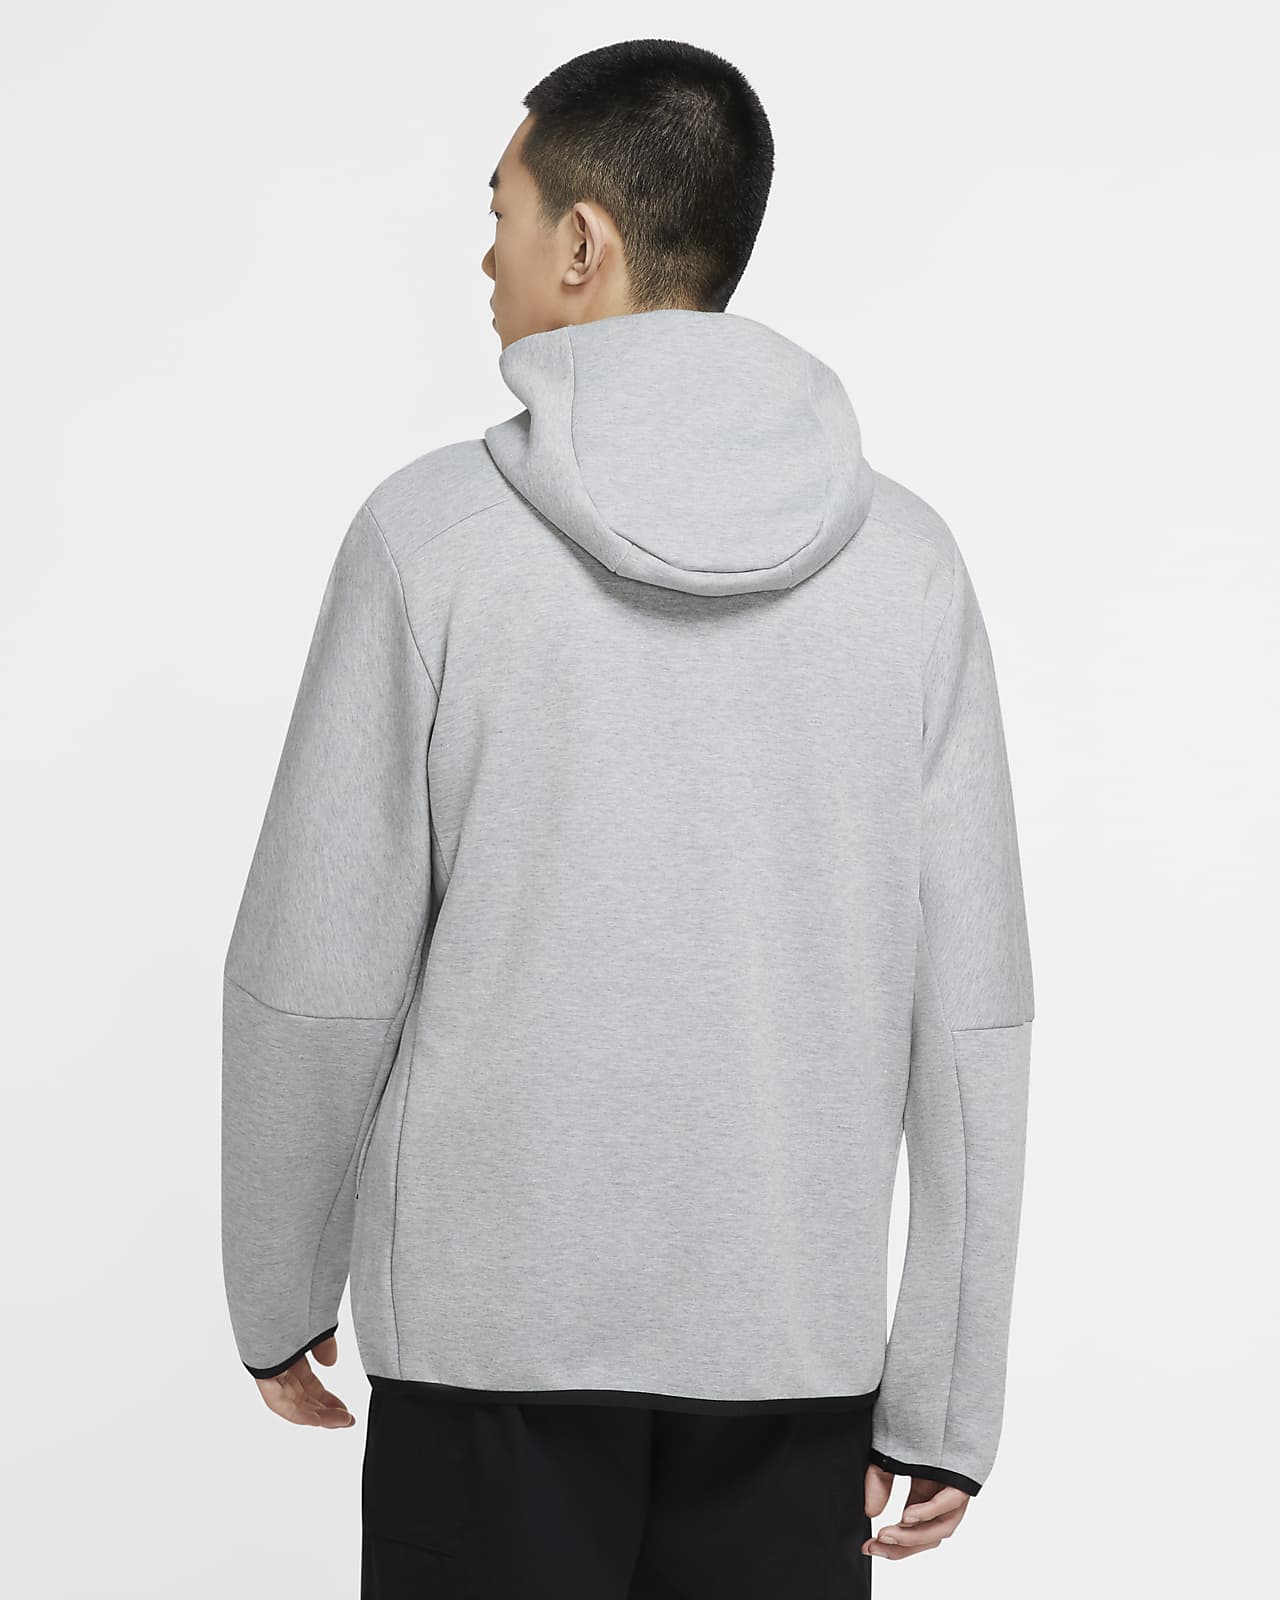 Hooded sweatshirt Nike Sportswear Tech Fleece Men s Pullover